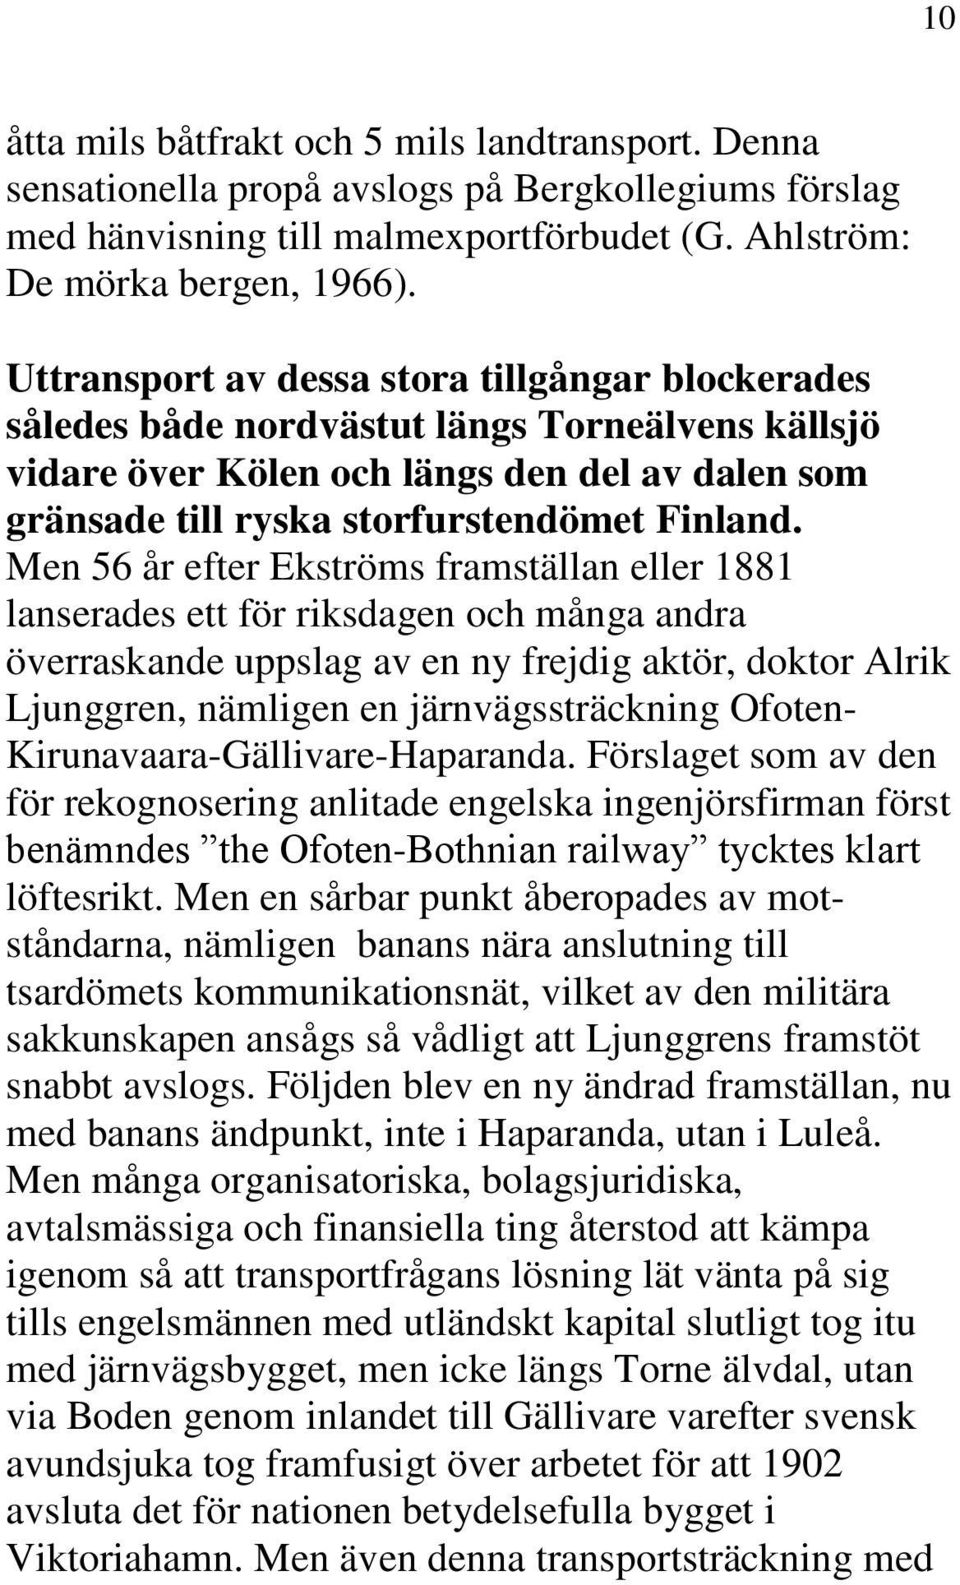 Men 56 år efter Ekströms framställan eller 1881 lanserades ett för riksdagen och många andra överraskande uppslag av en ny frejdig aktör, doktor Alrik Ljunggren, nämligen en järnvägssträckning